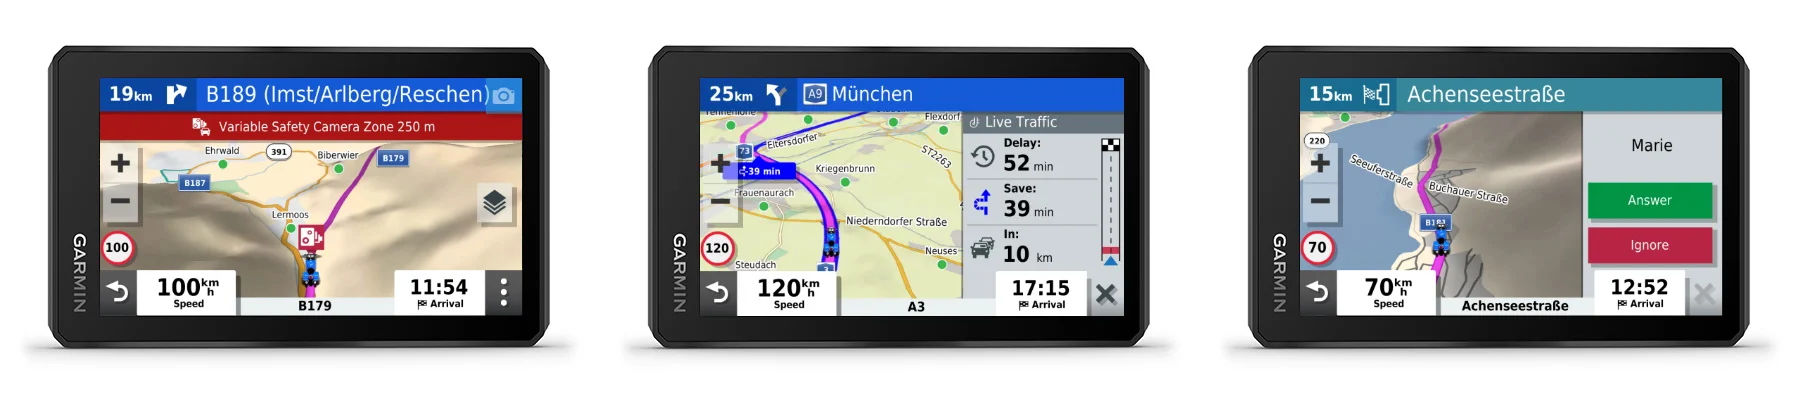 Captures d'écran de GPS moto Garmin